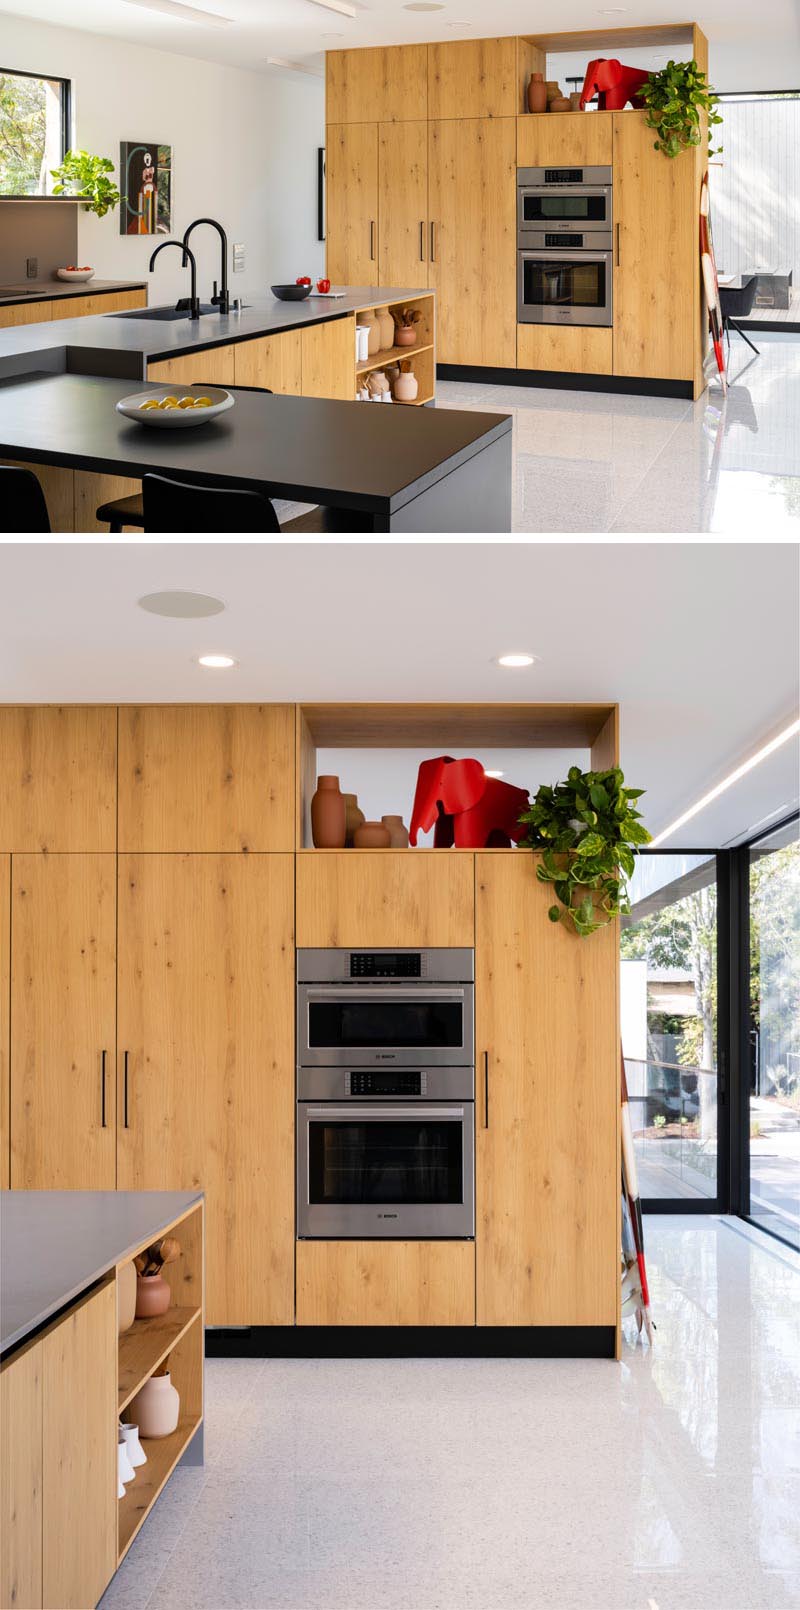 Эти современные деревянные кухонные шкафы добавляют в дом ощущение тепла, а более темные кварцевые столешницы добавляют элегантности пространству. # ModernWoodKitchen #KitchenDesign #WoodKitchen # ModernKitchen